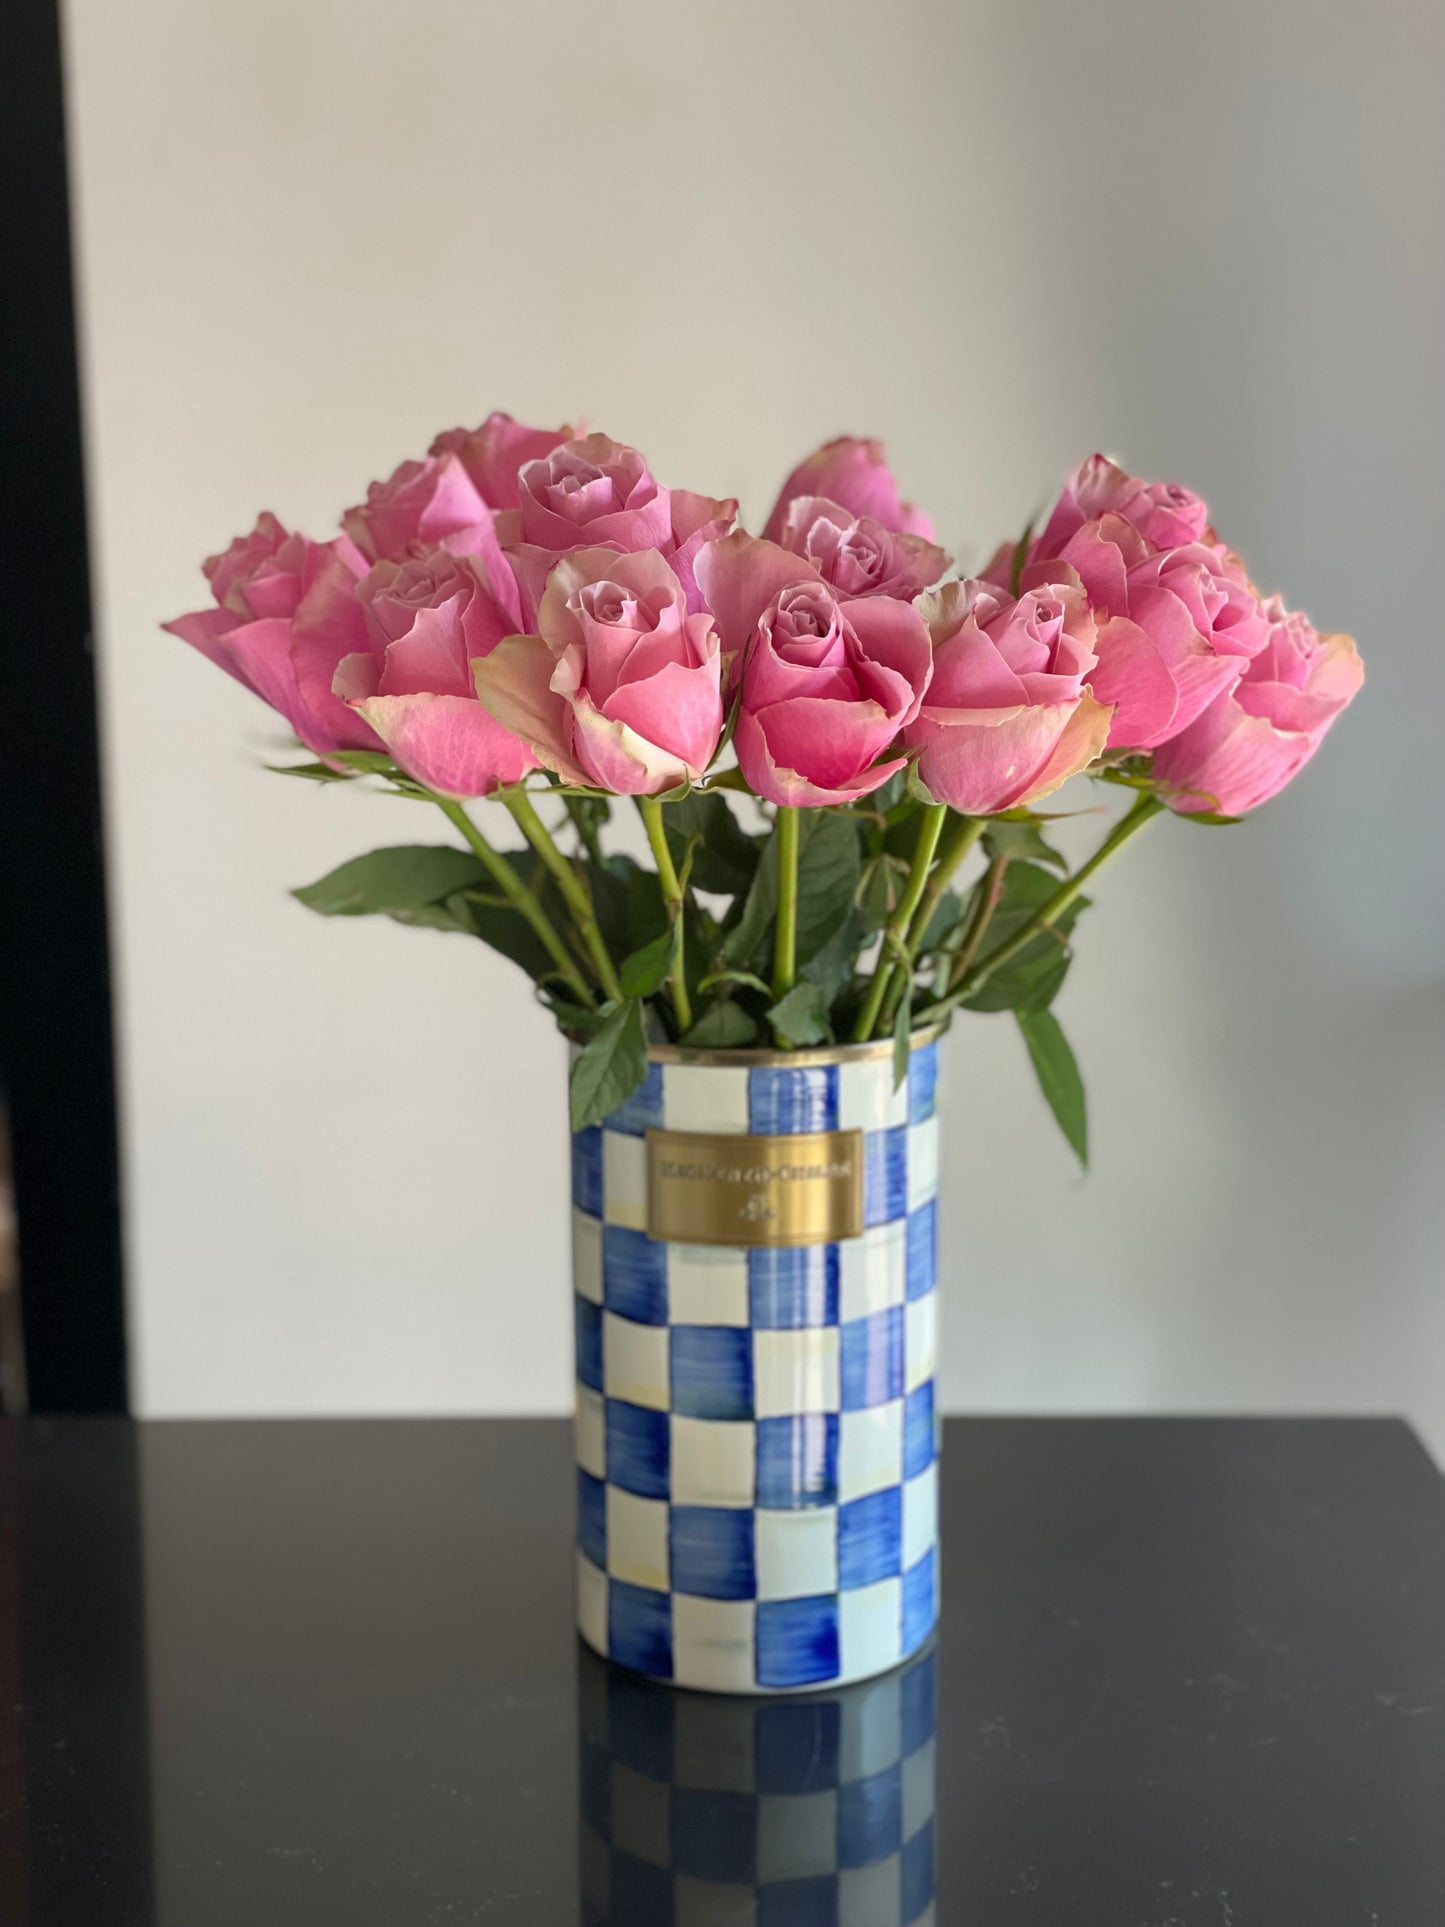 MacKenzie-Childs Royal Check Utensil Holder Vase and Roses